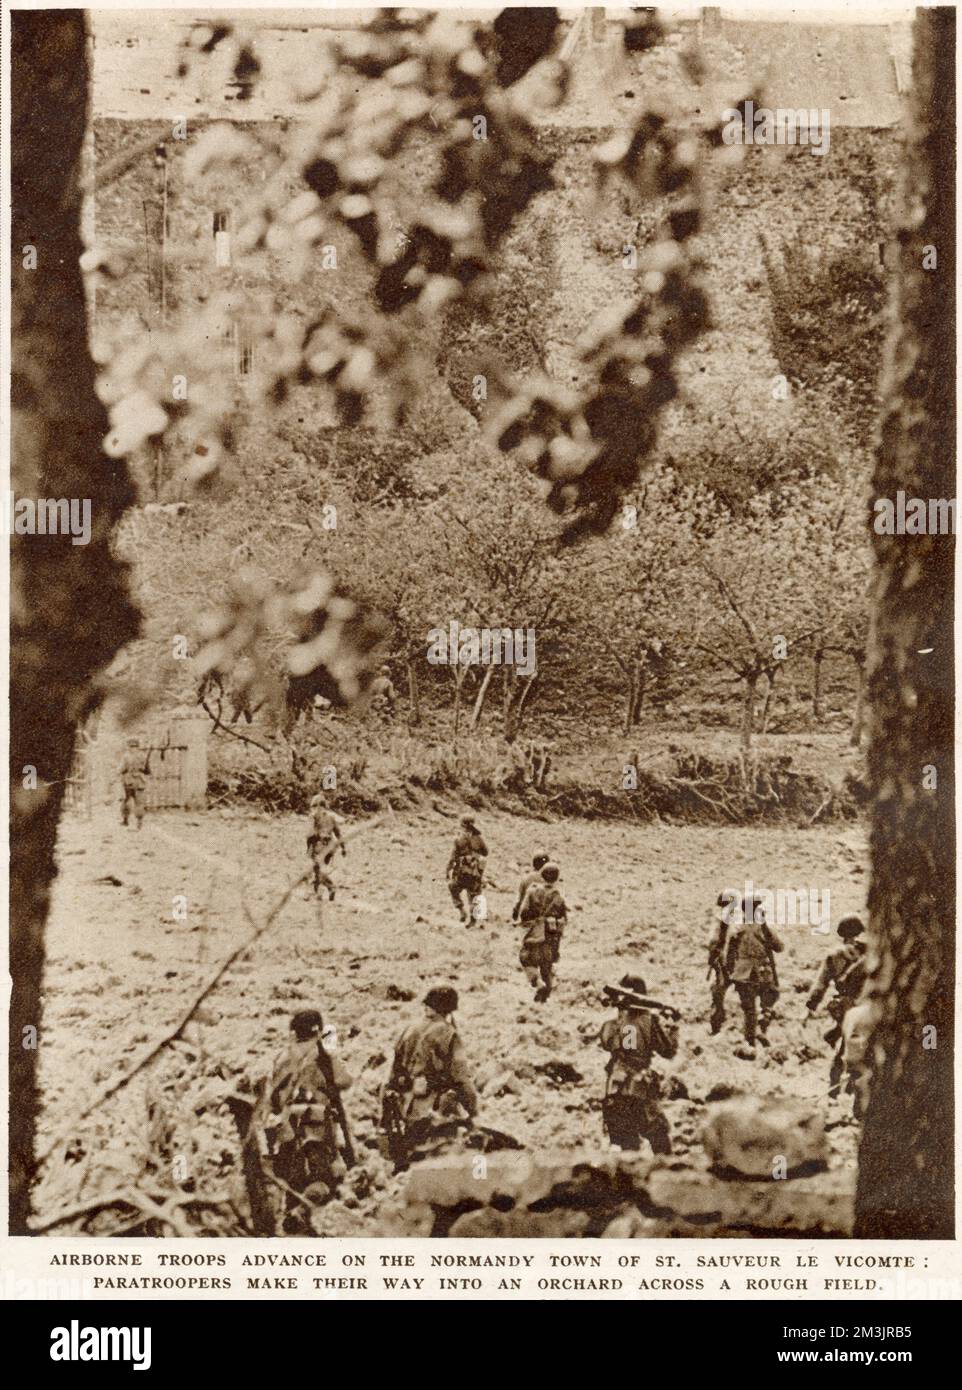 Amerikanische Luftstreitkräfte, die durch einen Obstgarten in die Stadt St. vorrücken Sauveur Le Viconte, Normandie, Juni 1944. Dieses Foto wurde kurz nach dem "D-Day", dem 6. Juni, aufgenommen, als die Fallschirmjäger nach Frankreich abgeworfen wurden. Stockfoto